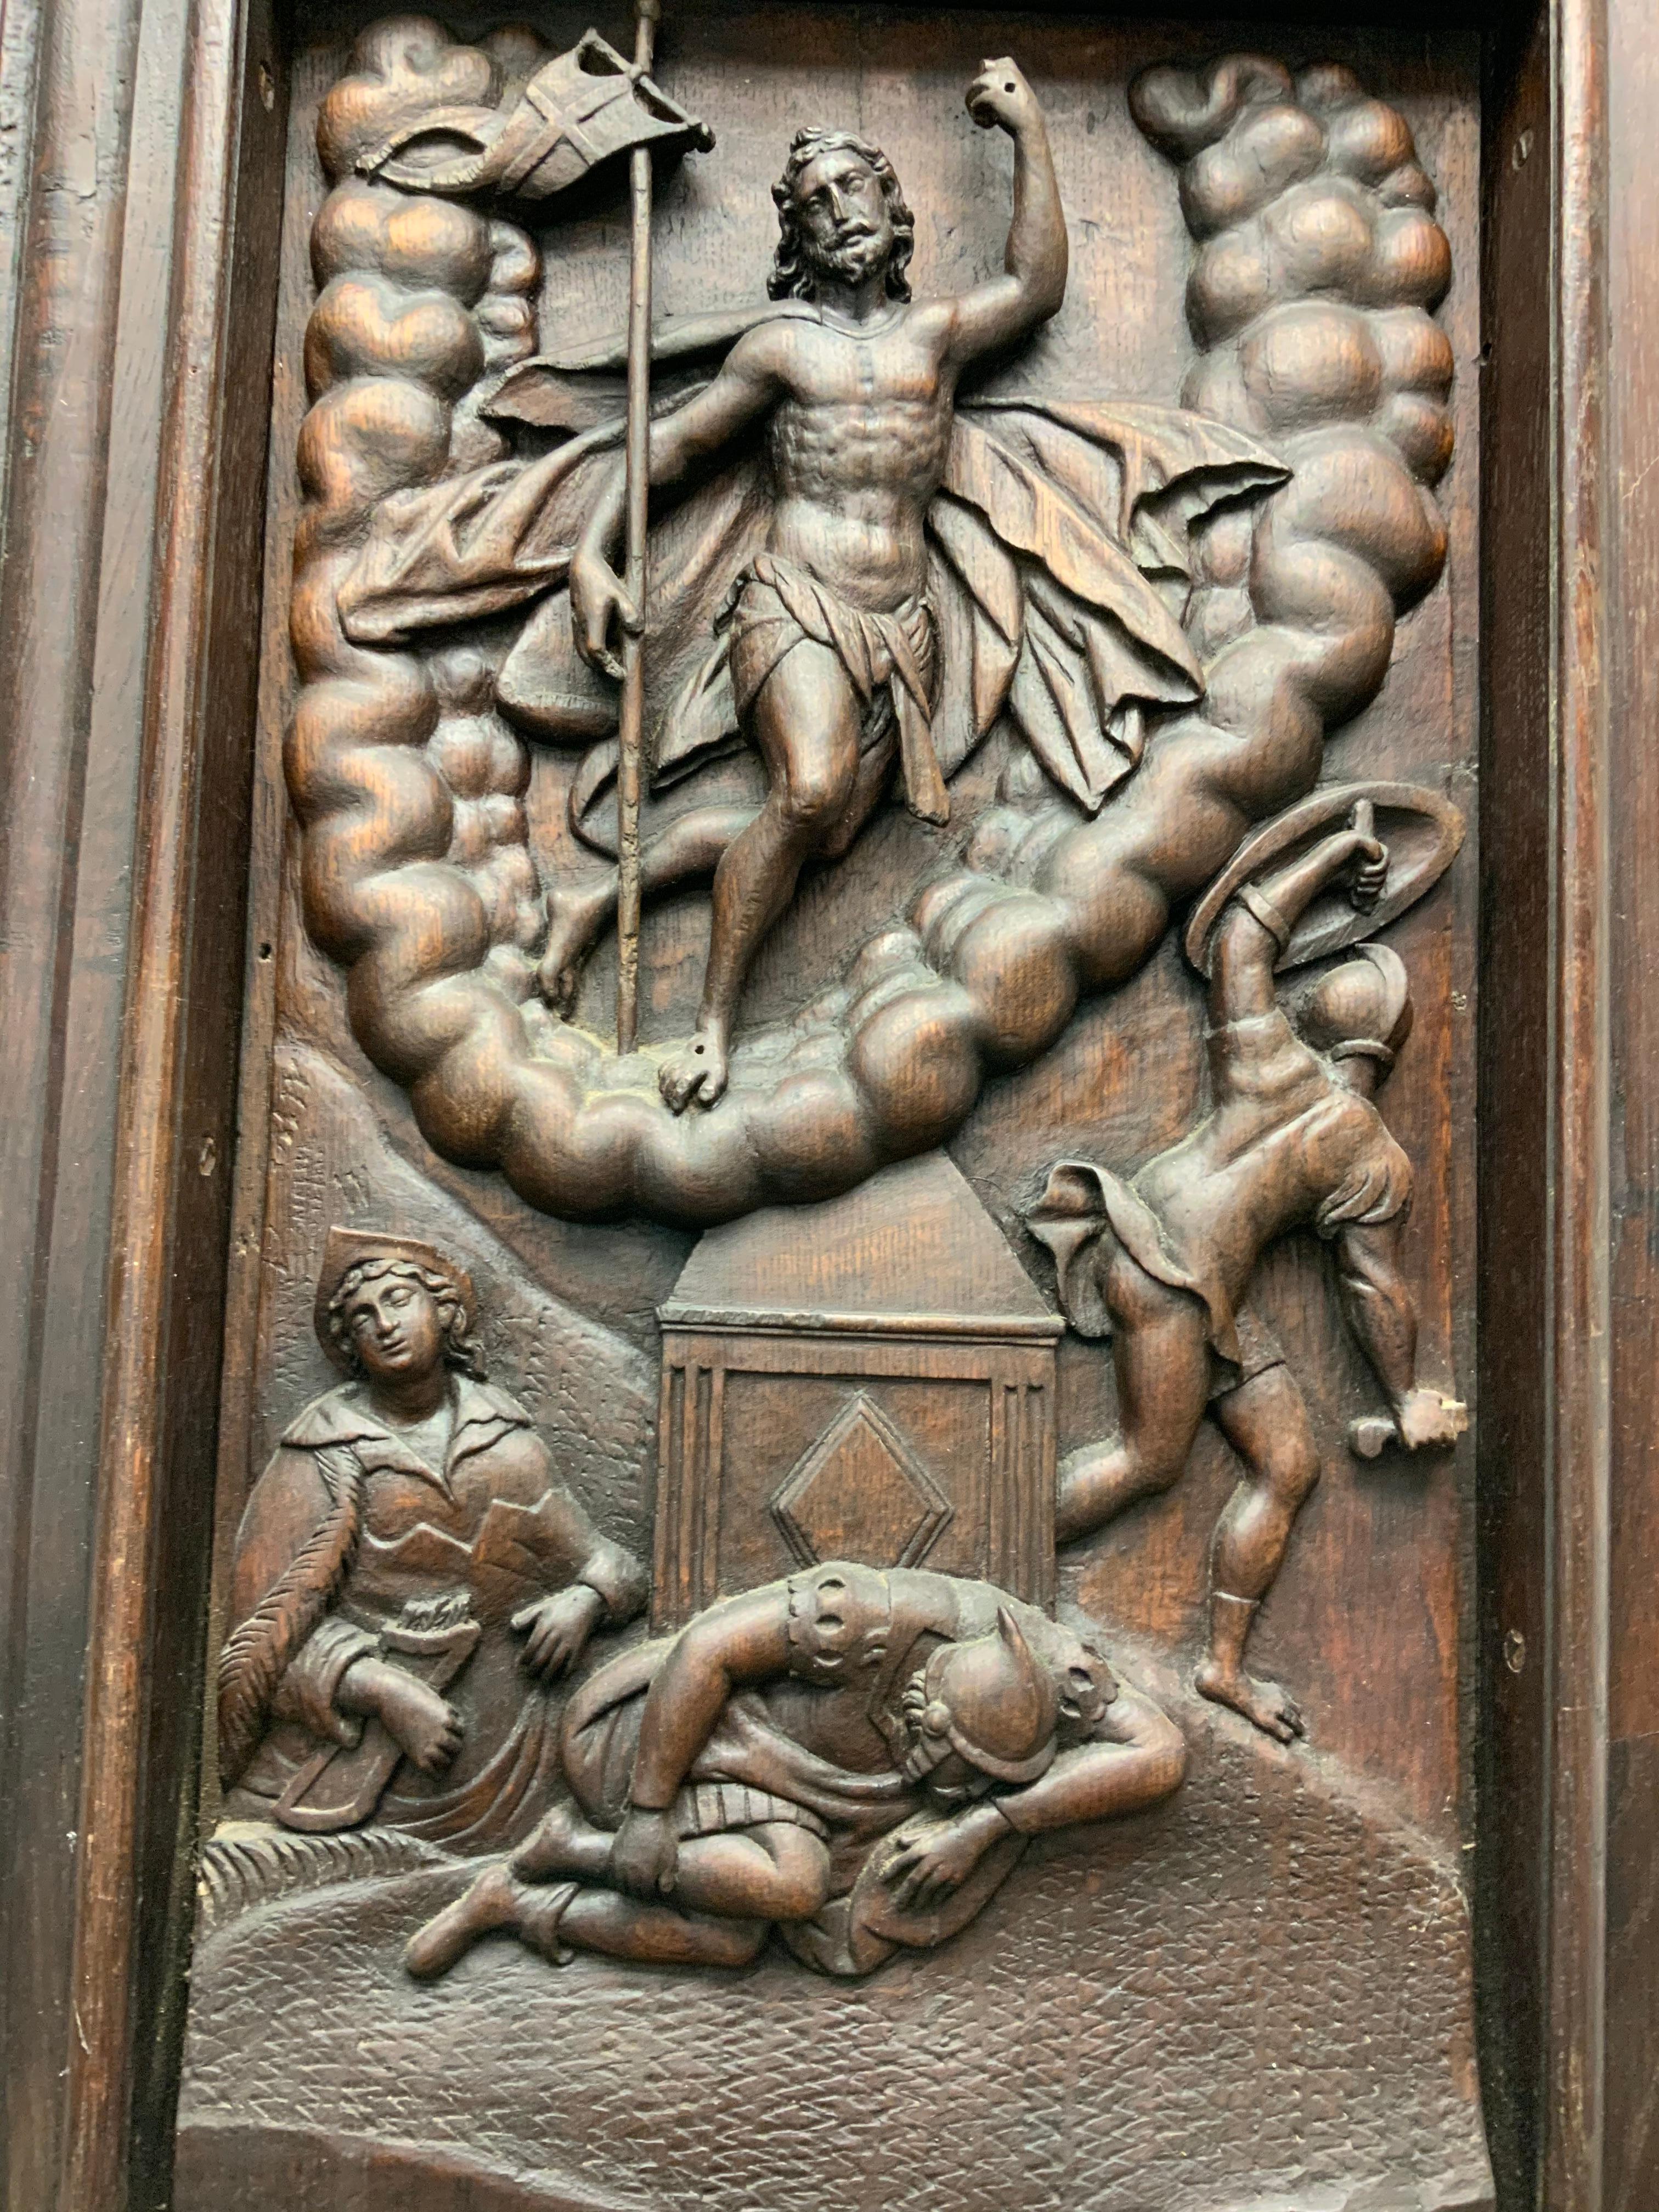 Il s'agit d'une grande plaque en bois sculpté représentant une scène en relief de la résurrection de Jésus-Christ. Il se tient debout, victorieux et élevé au-dessus d'un amas de nuages en forme de U, la bannière de la Résurrection dans sa main